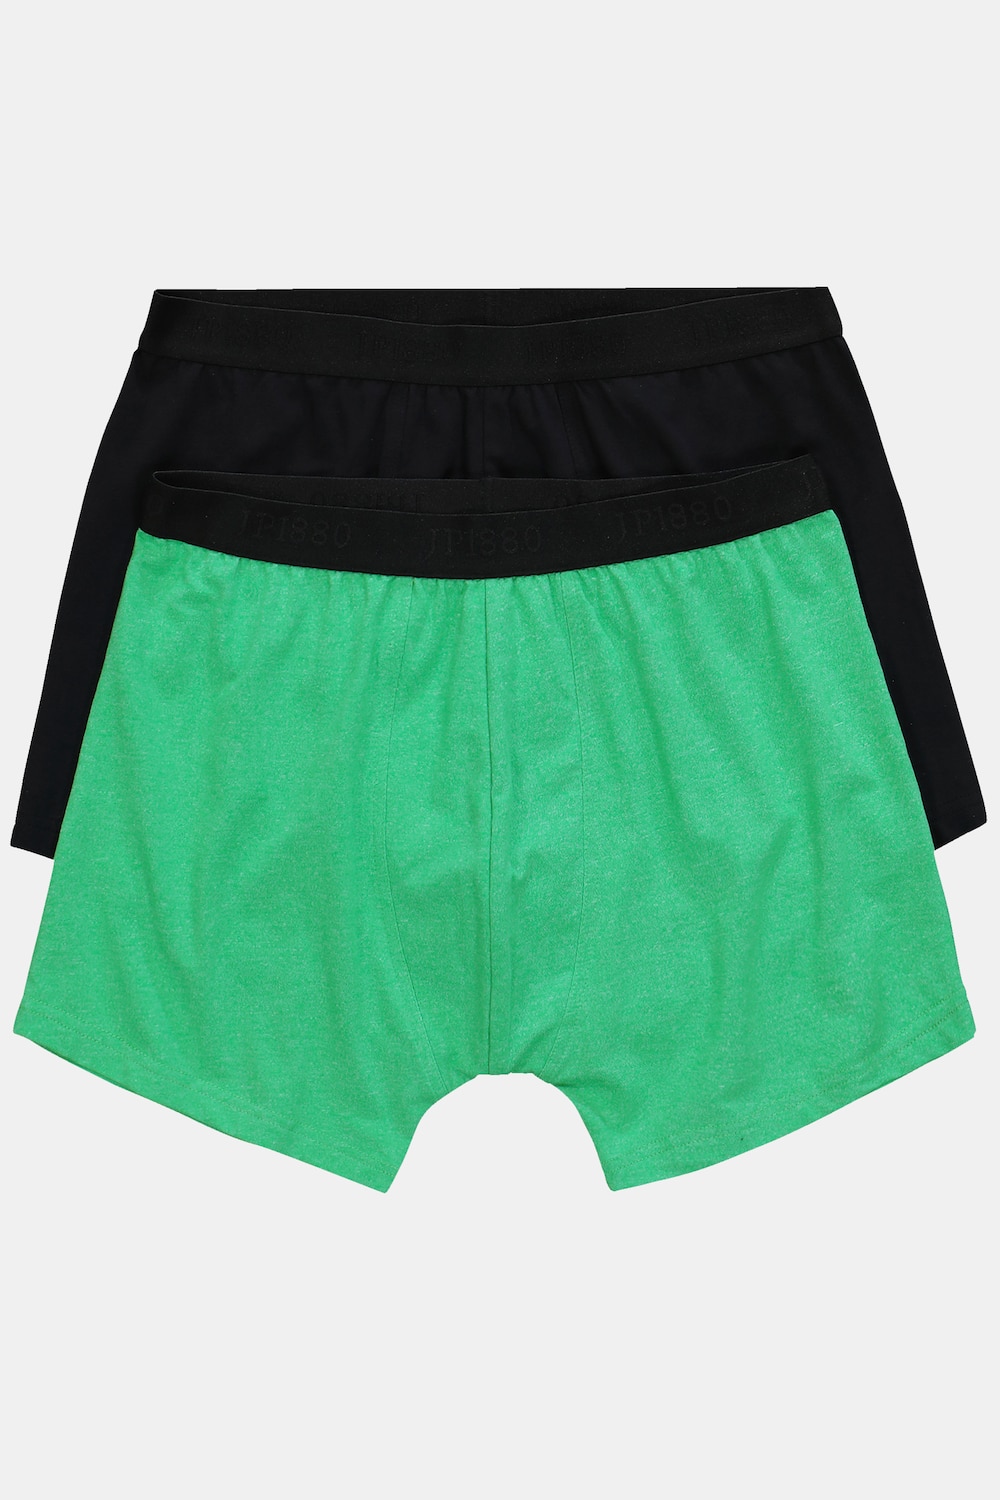 Große Größen JP1880 Midpants, Herren, grün, Größe: 4XL, Polyester/Baumwolle, JP1880 von JP1880